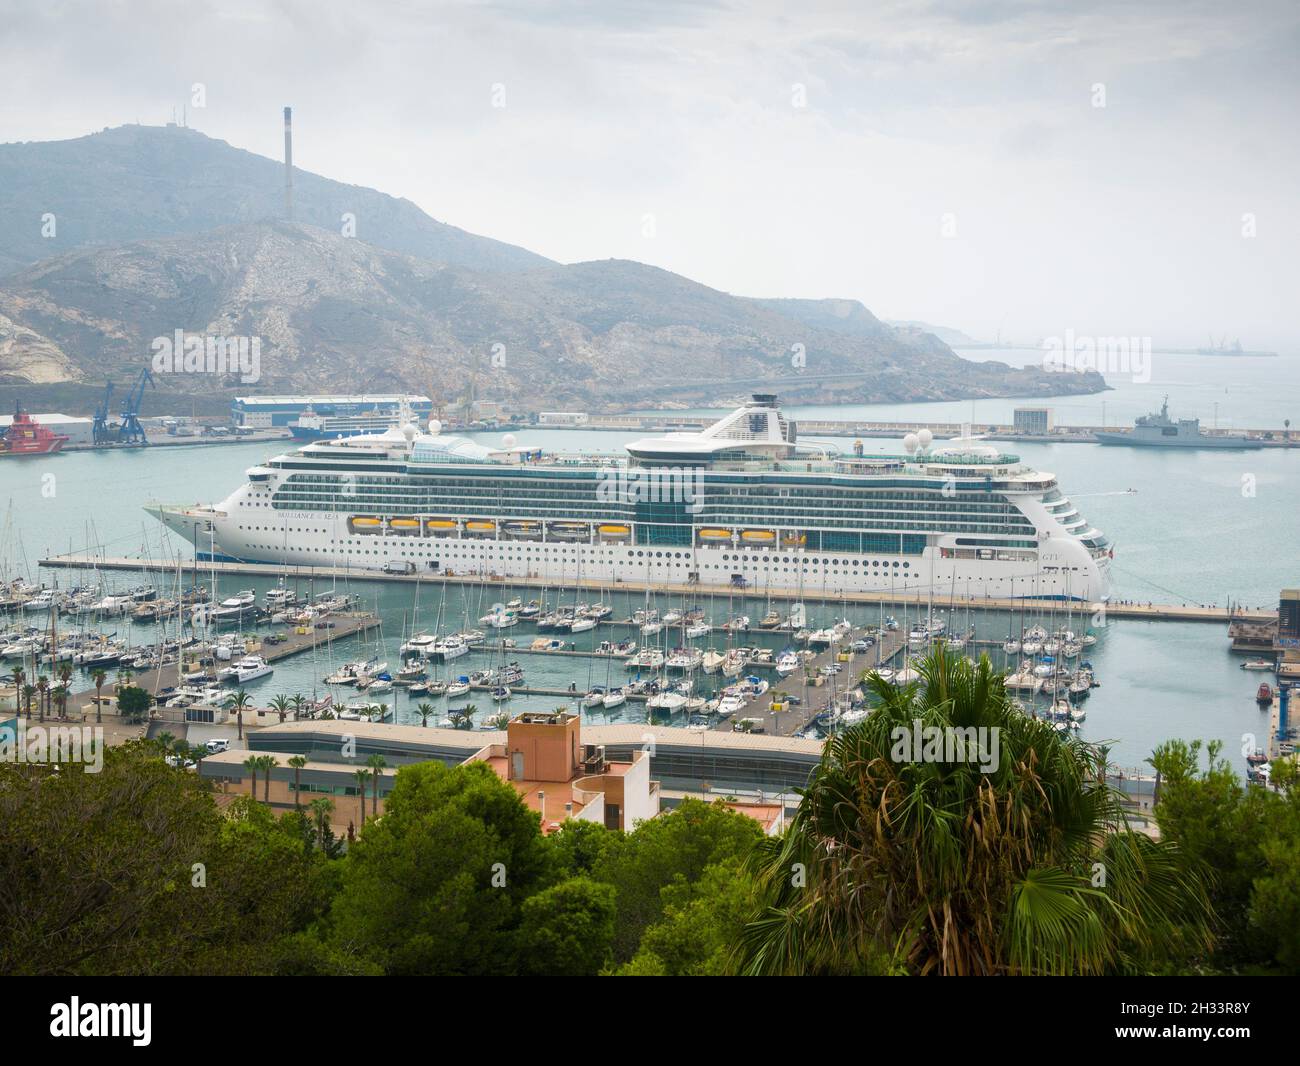 El crucero Royal Caribbean, Brilliance of the Seas, atracó en el puerto de la ciudad de Cartagena, España, en la Costa Blanca. Foto de stock